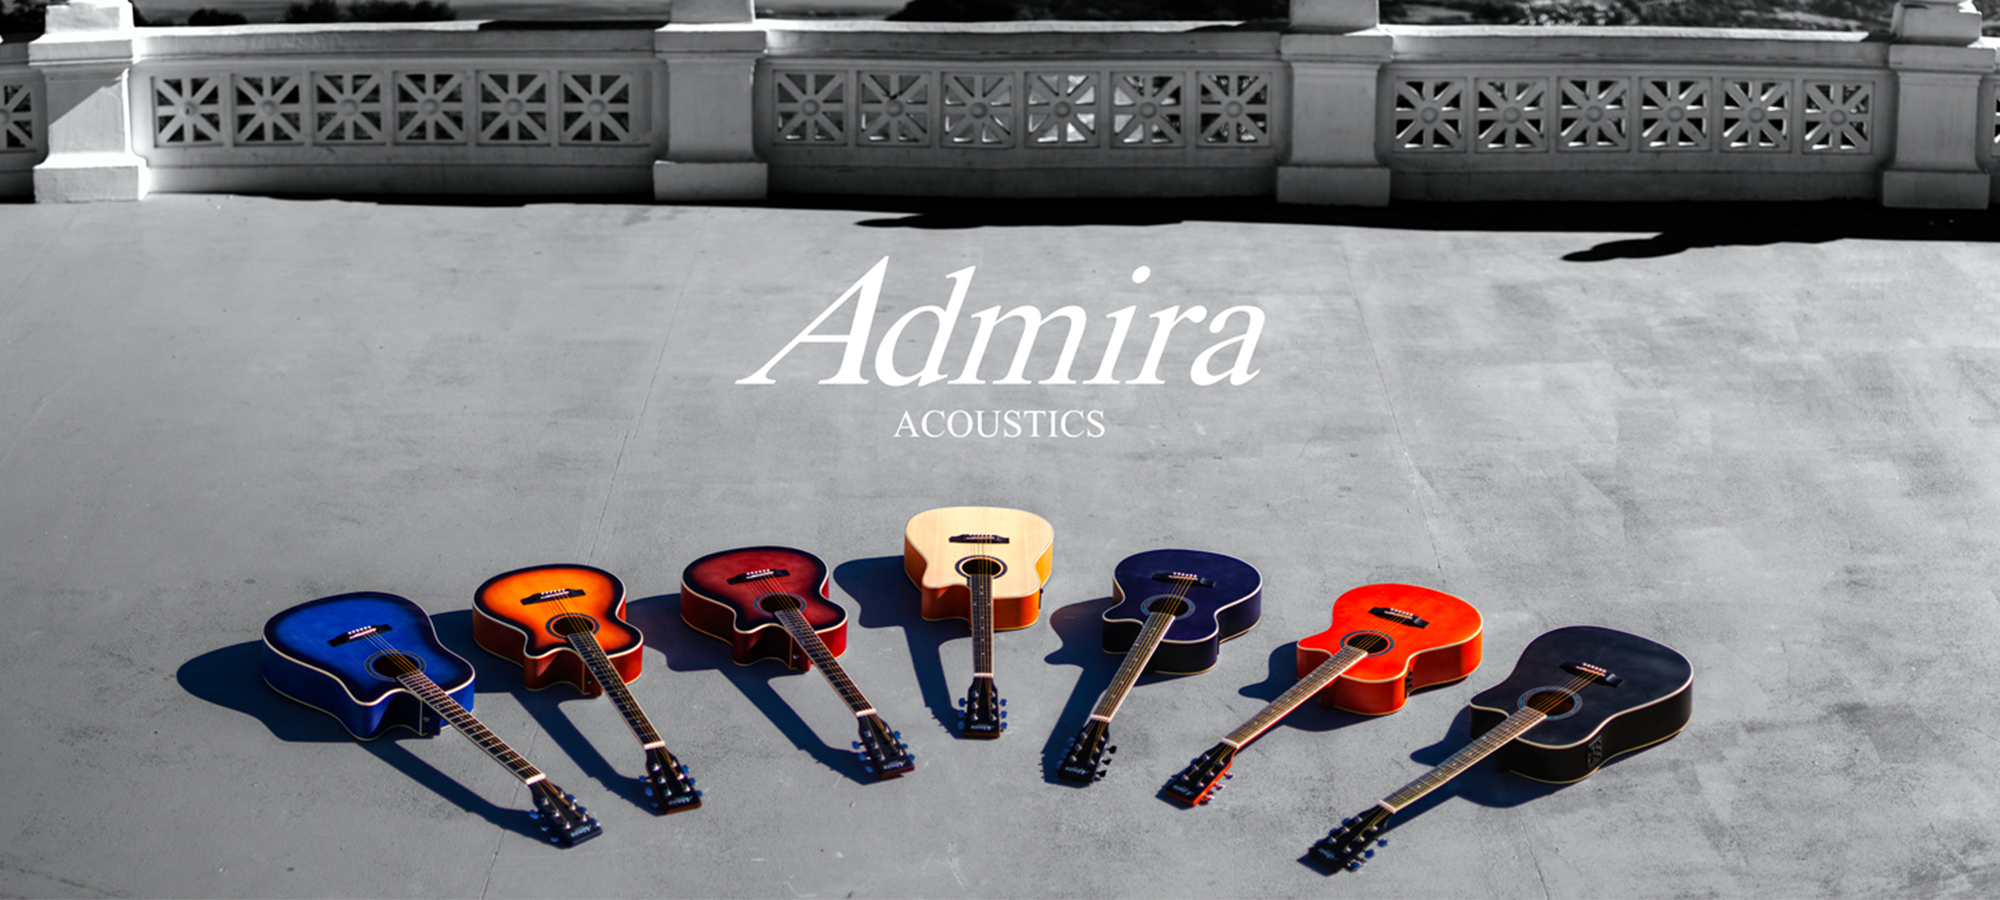 Enrique Keller nimmt die Produktion der Akustik-Gitarren wieder auf